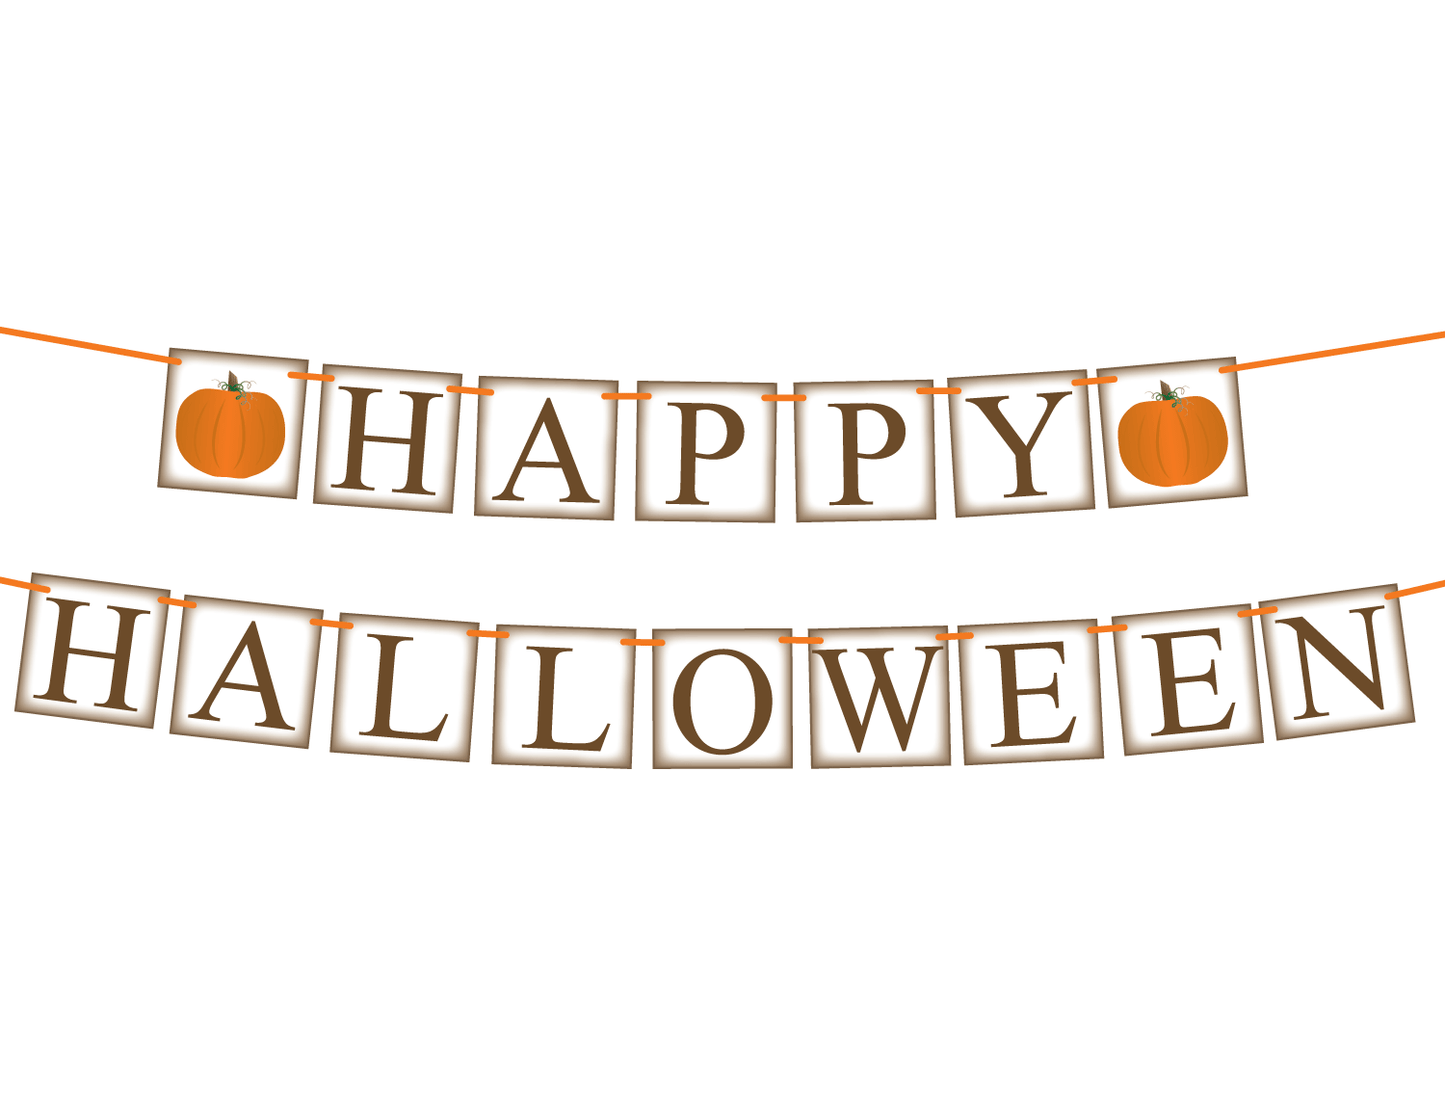 DIY happy halloween banner - Celebrating Together